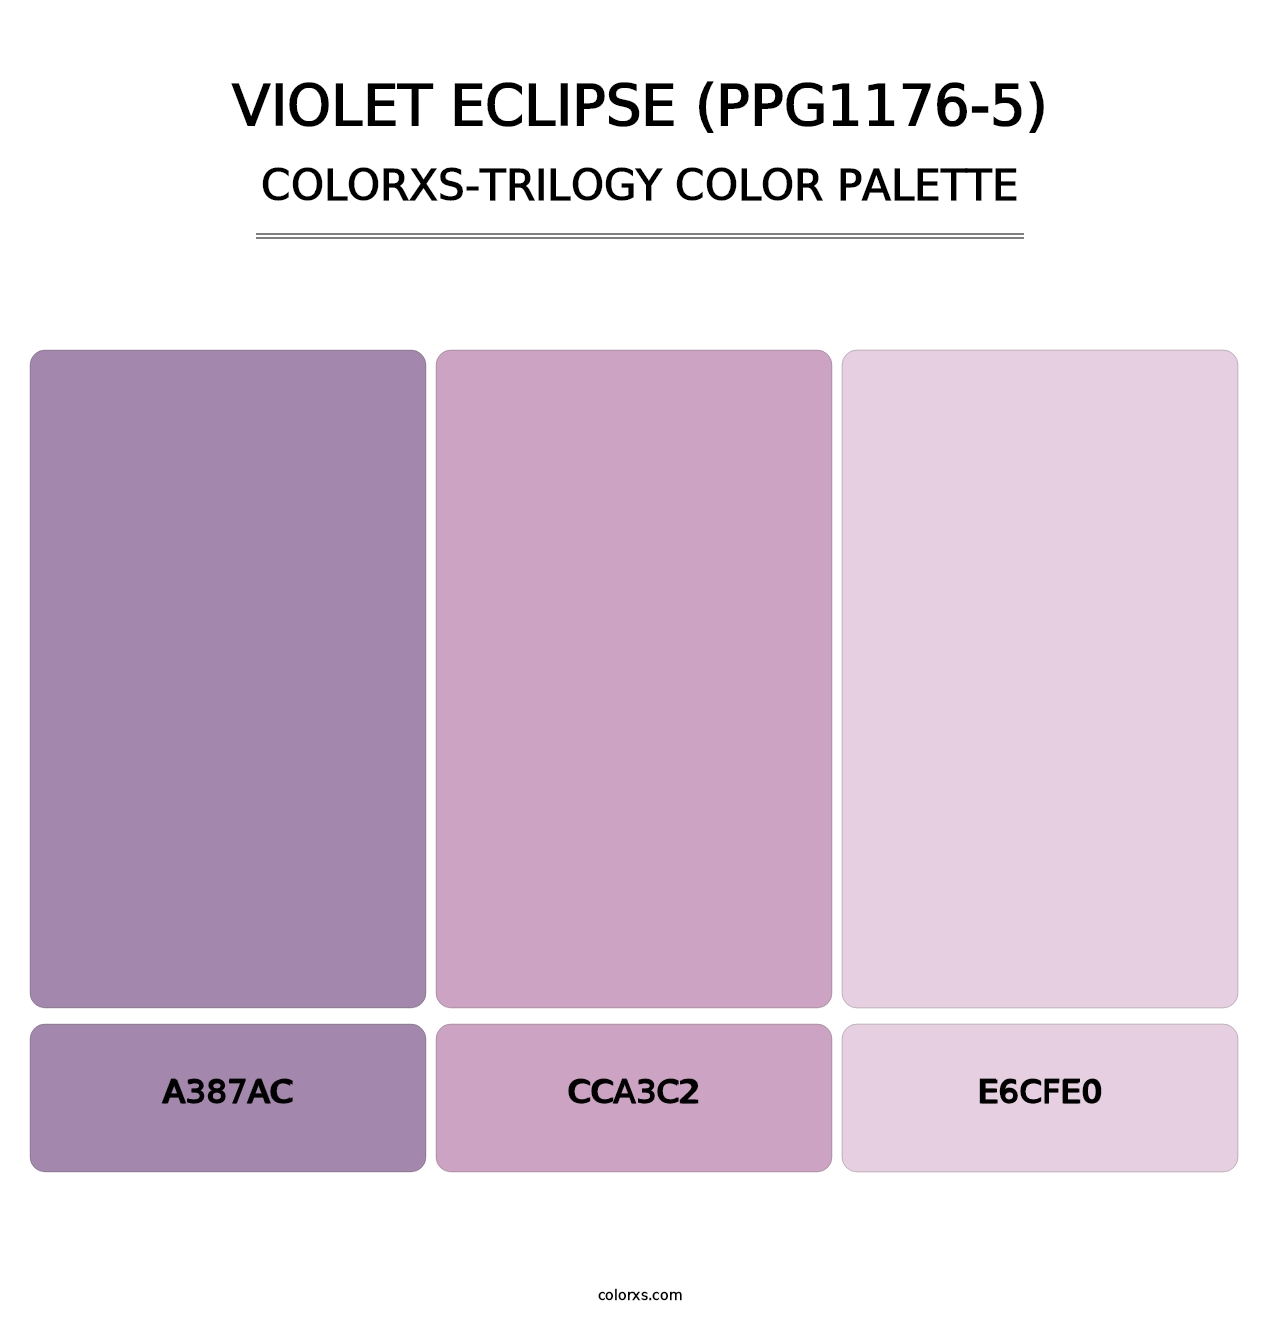 Violet Eclipse (PPG1176-5) - Colorxs Trilogy Palette